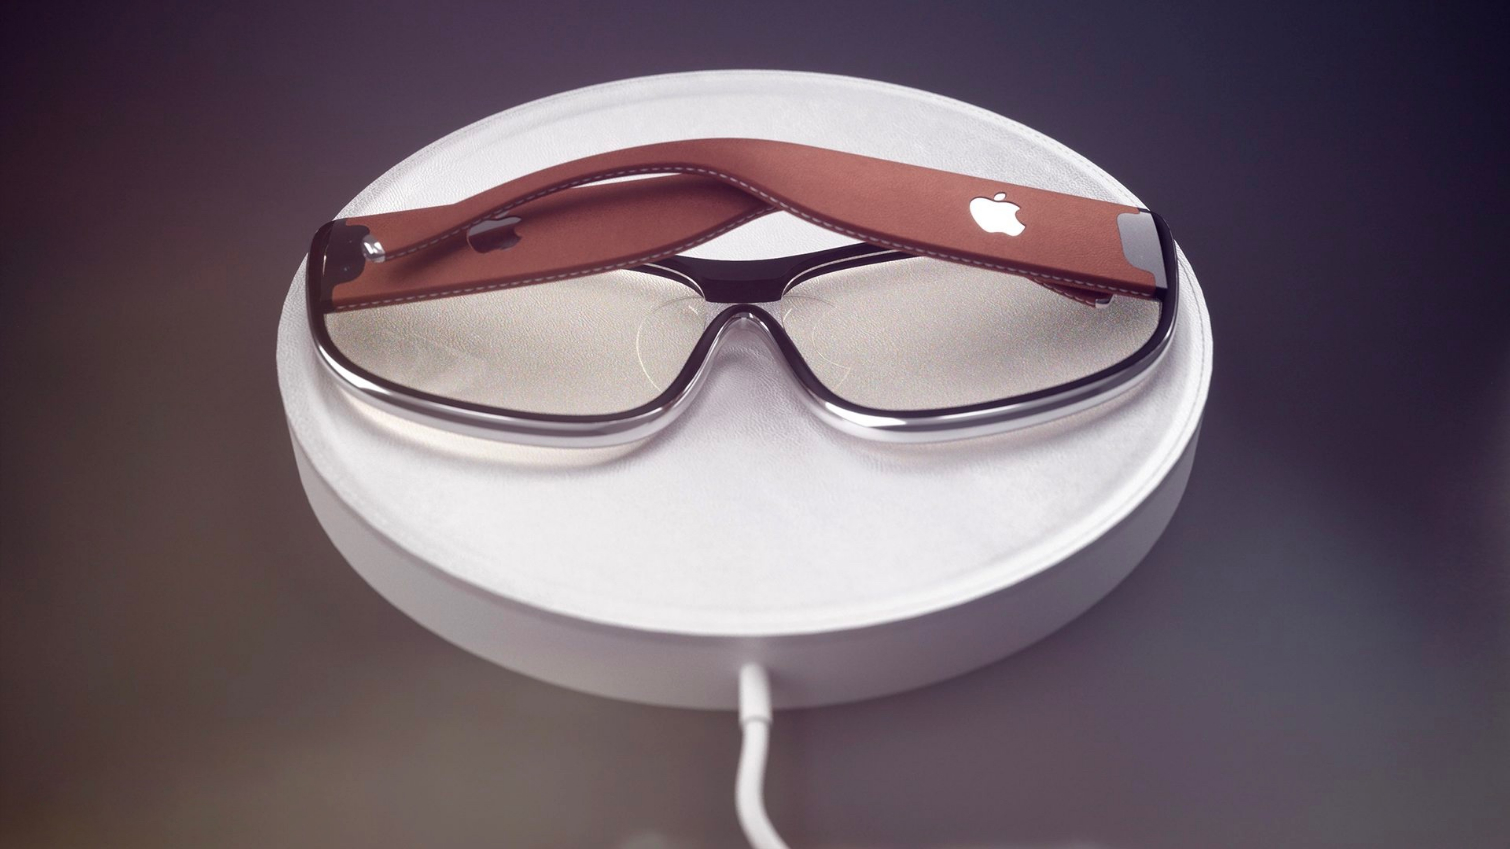 Occhiali Apple per la realtà aumentata in vendita dal 2020